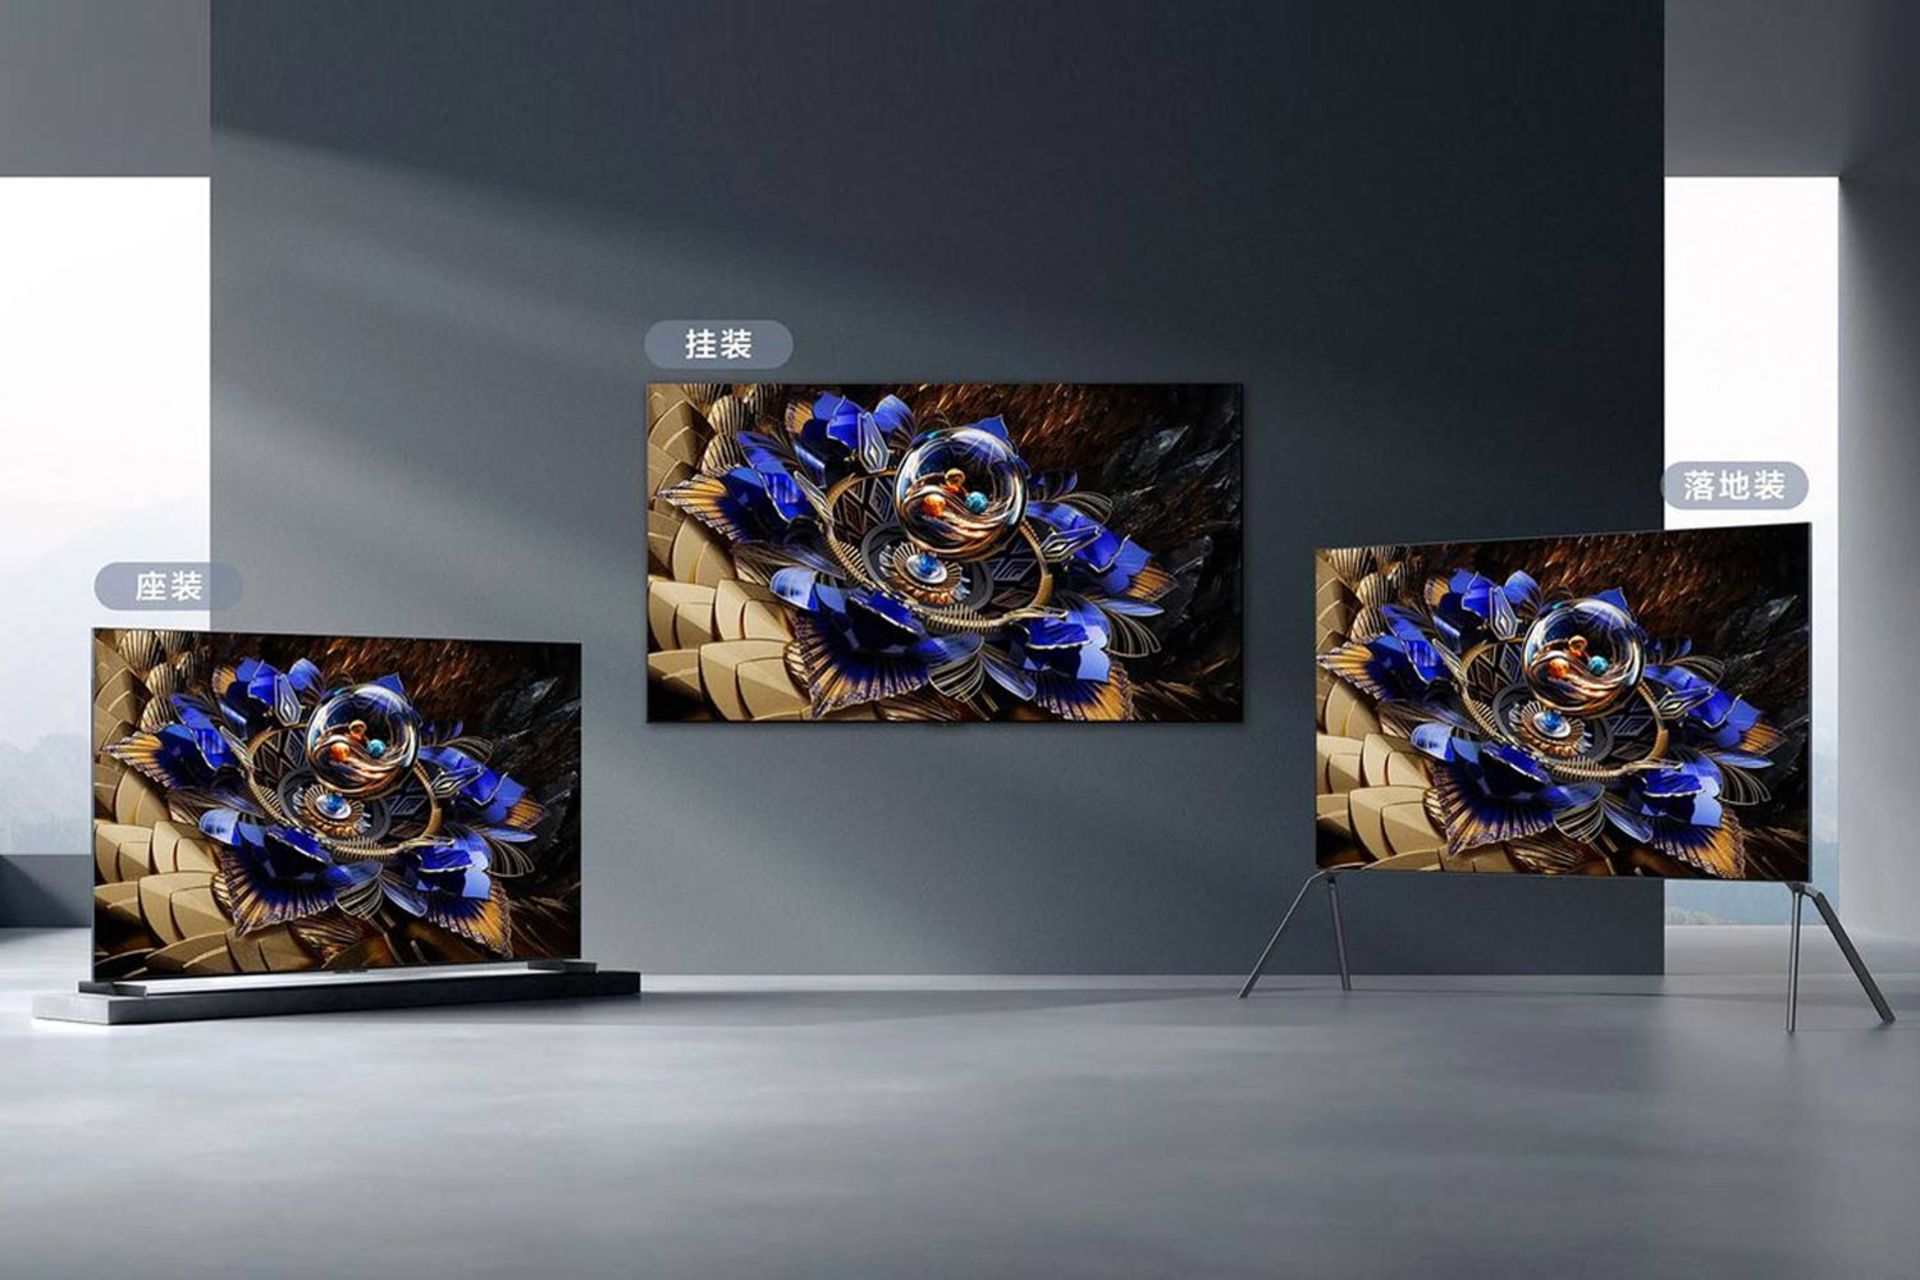 تلویزیون تی سی ال X11H در سه سایز ۸۵، ۹۸ و ۱۶۳ اینچی